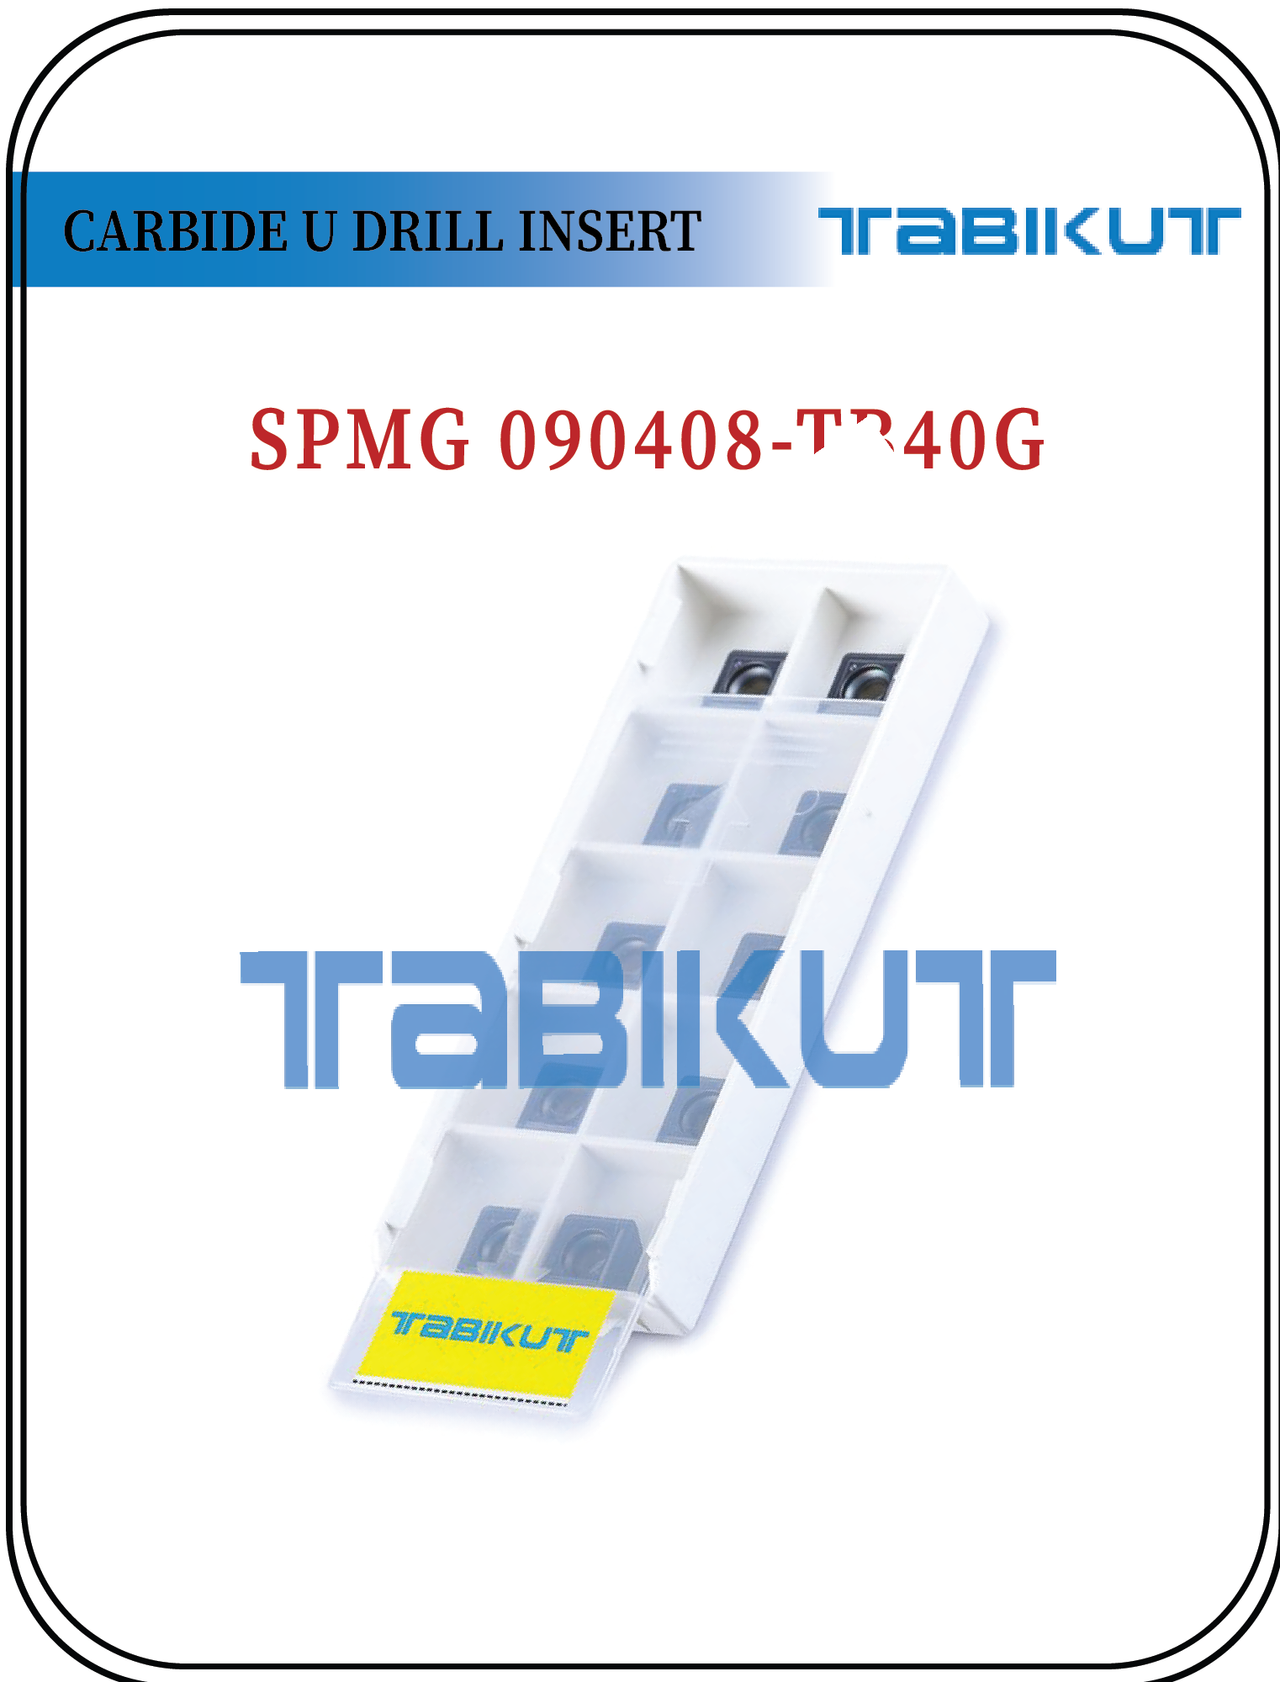 SPMG090408 TABIKUT Carbide Drilling Insert